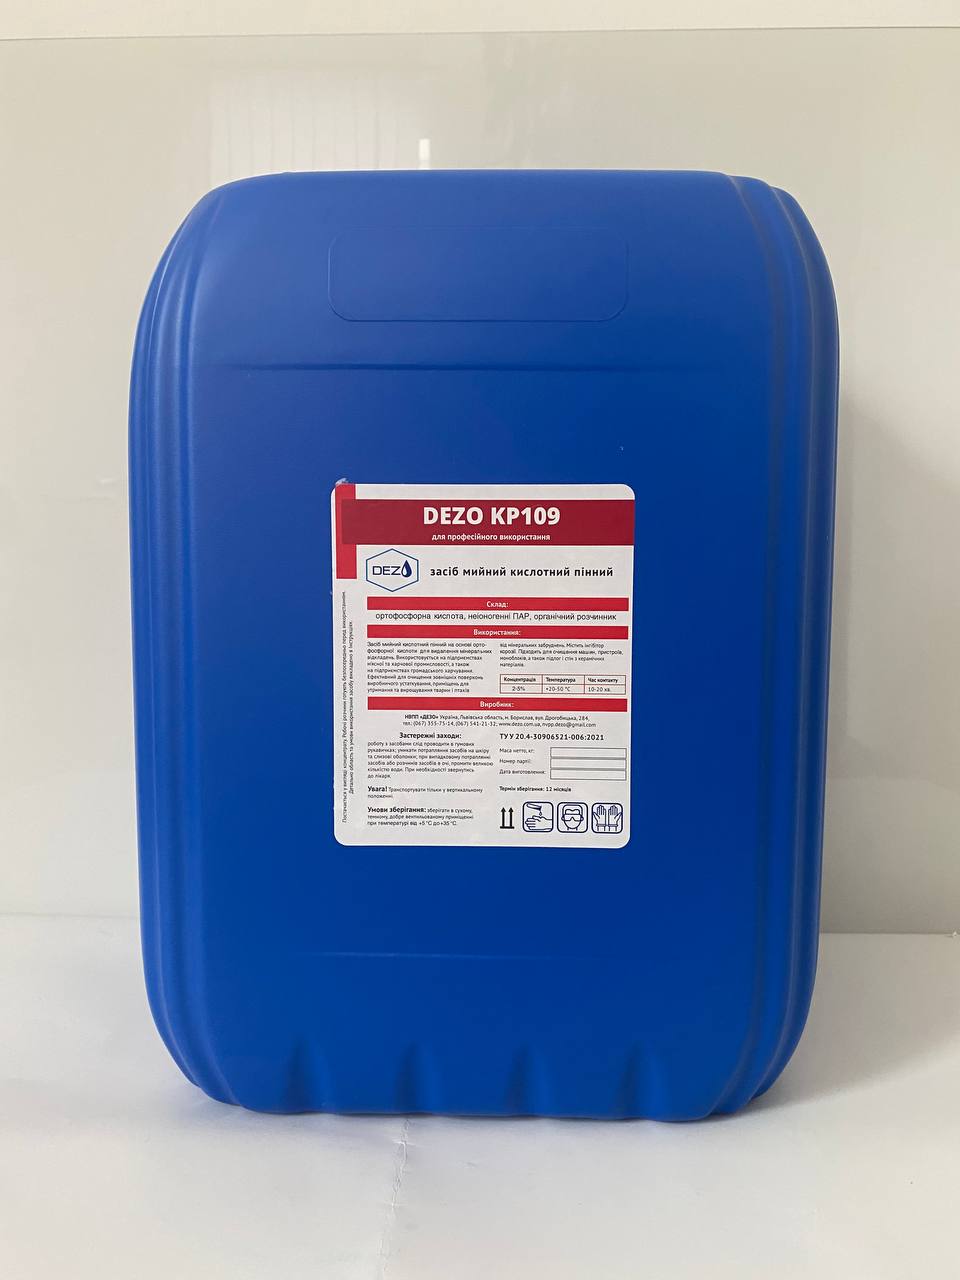 Засіб мийний кислотний пінний DEZO KP109, 10 кг